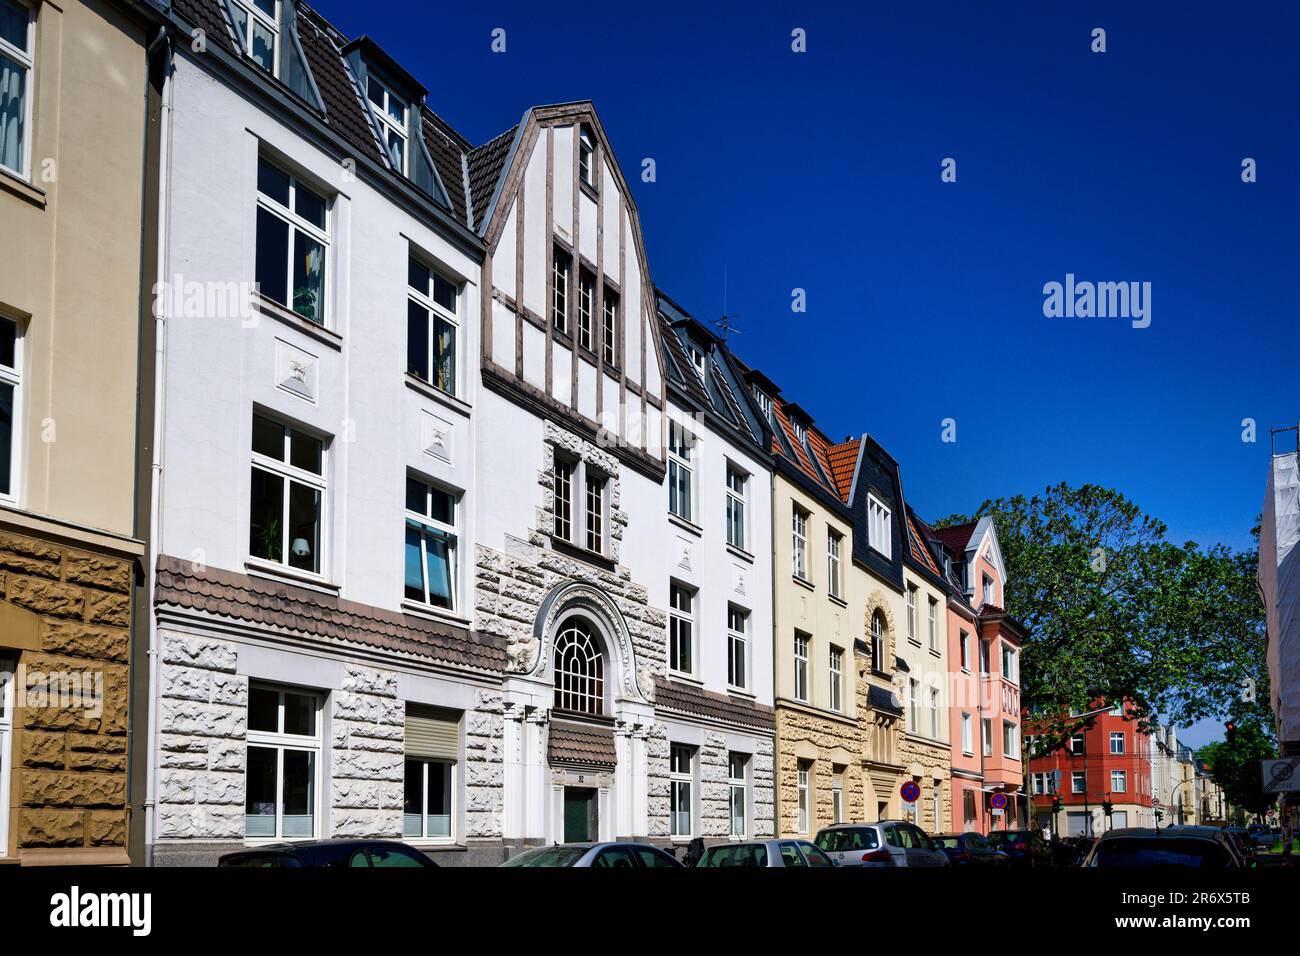 vieux bâtiments typiques de la fin du 19th siècle dans le quartier de neuehrenfeld à cologne Banque D'Images